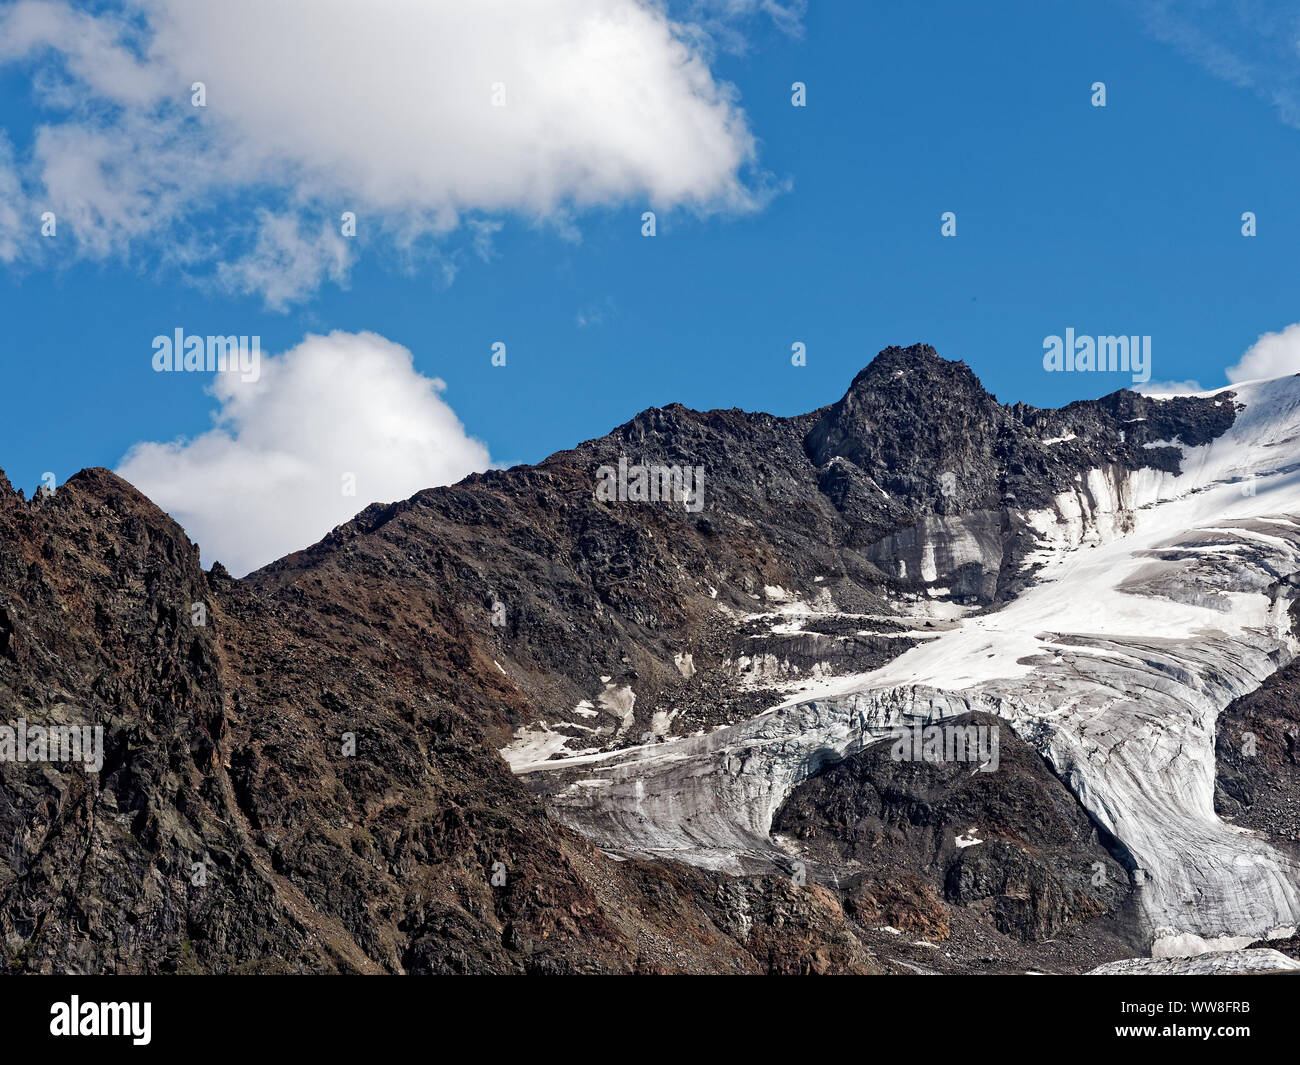 Glacier de Kaunertal dans les Alpes centrales entre la Suisse, l'Italie et l'Autriche montre le glacier de Kaunertal Road en Autriche Banque D'Images